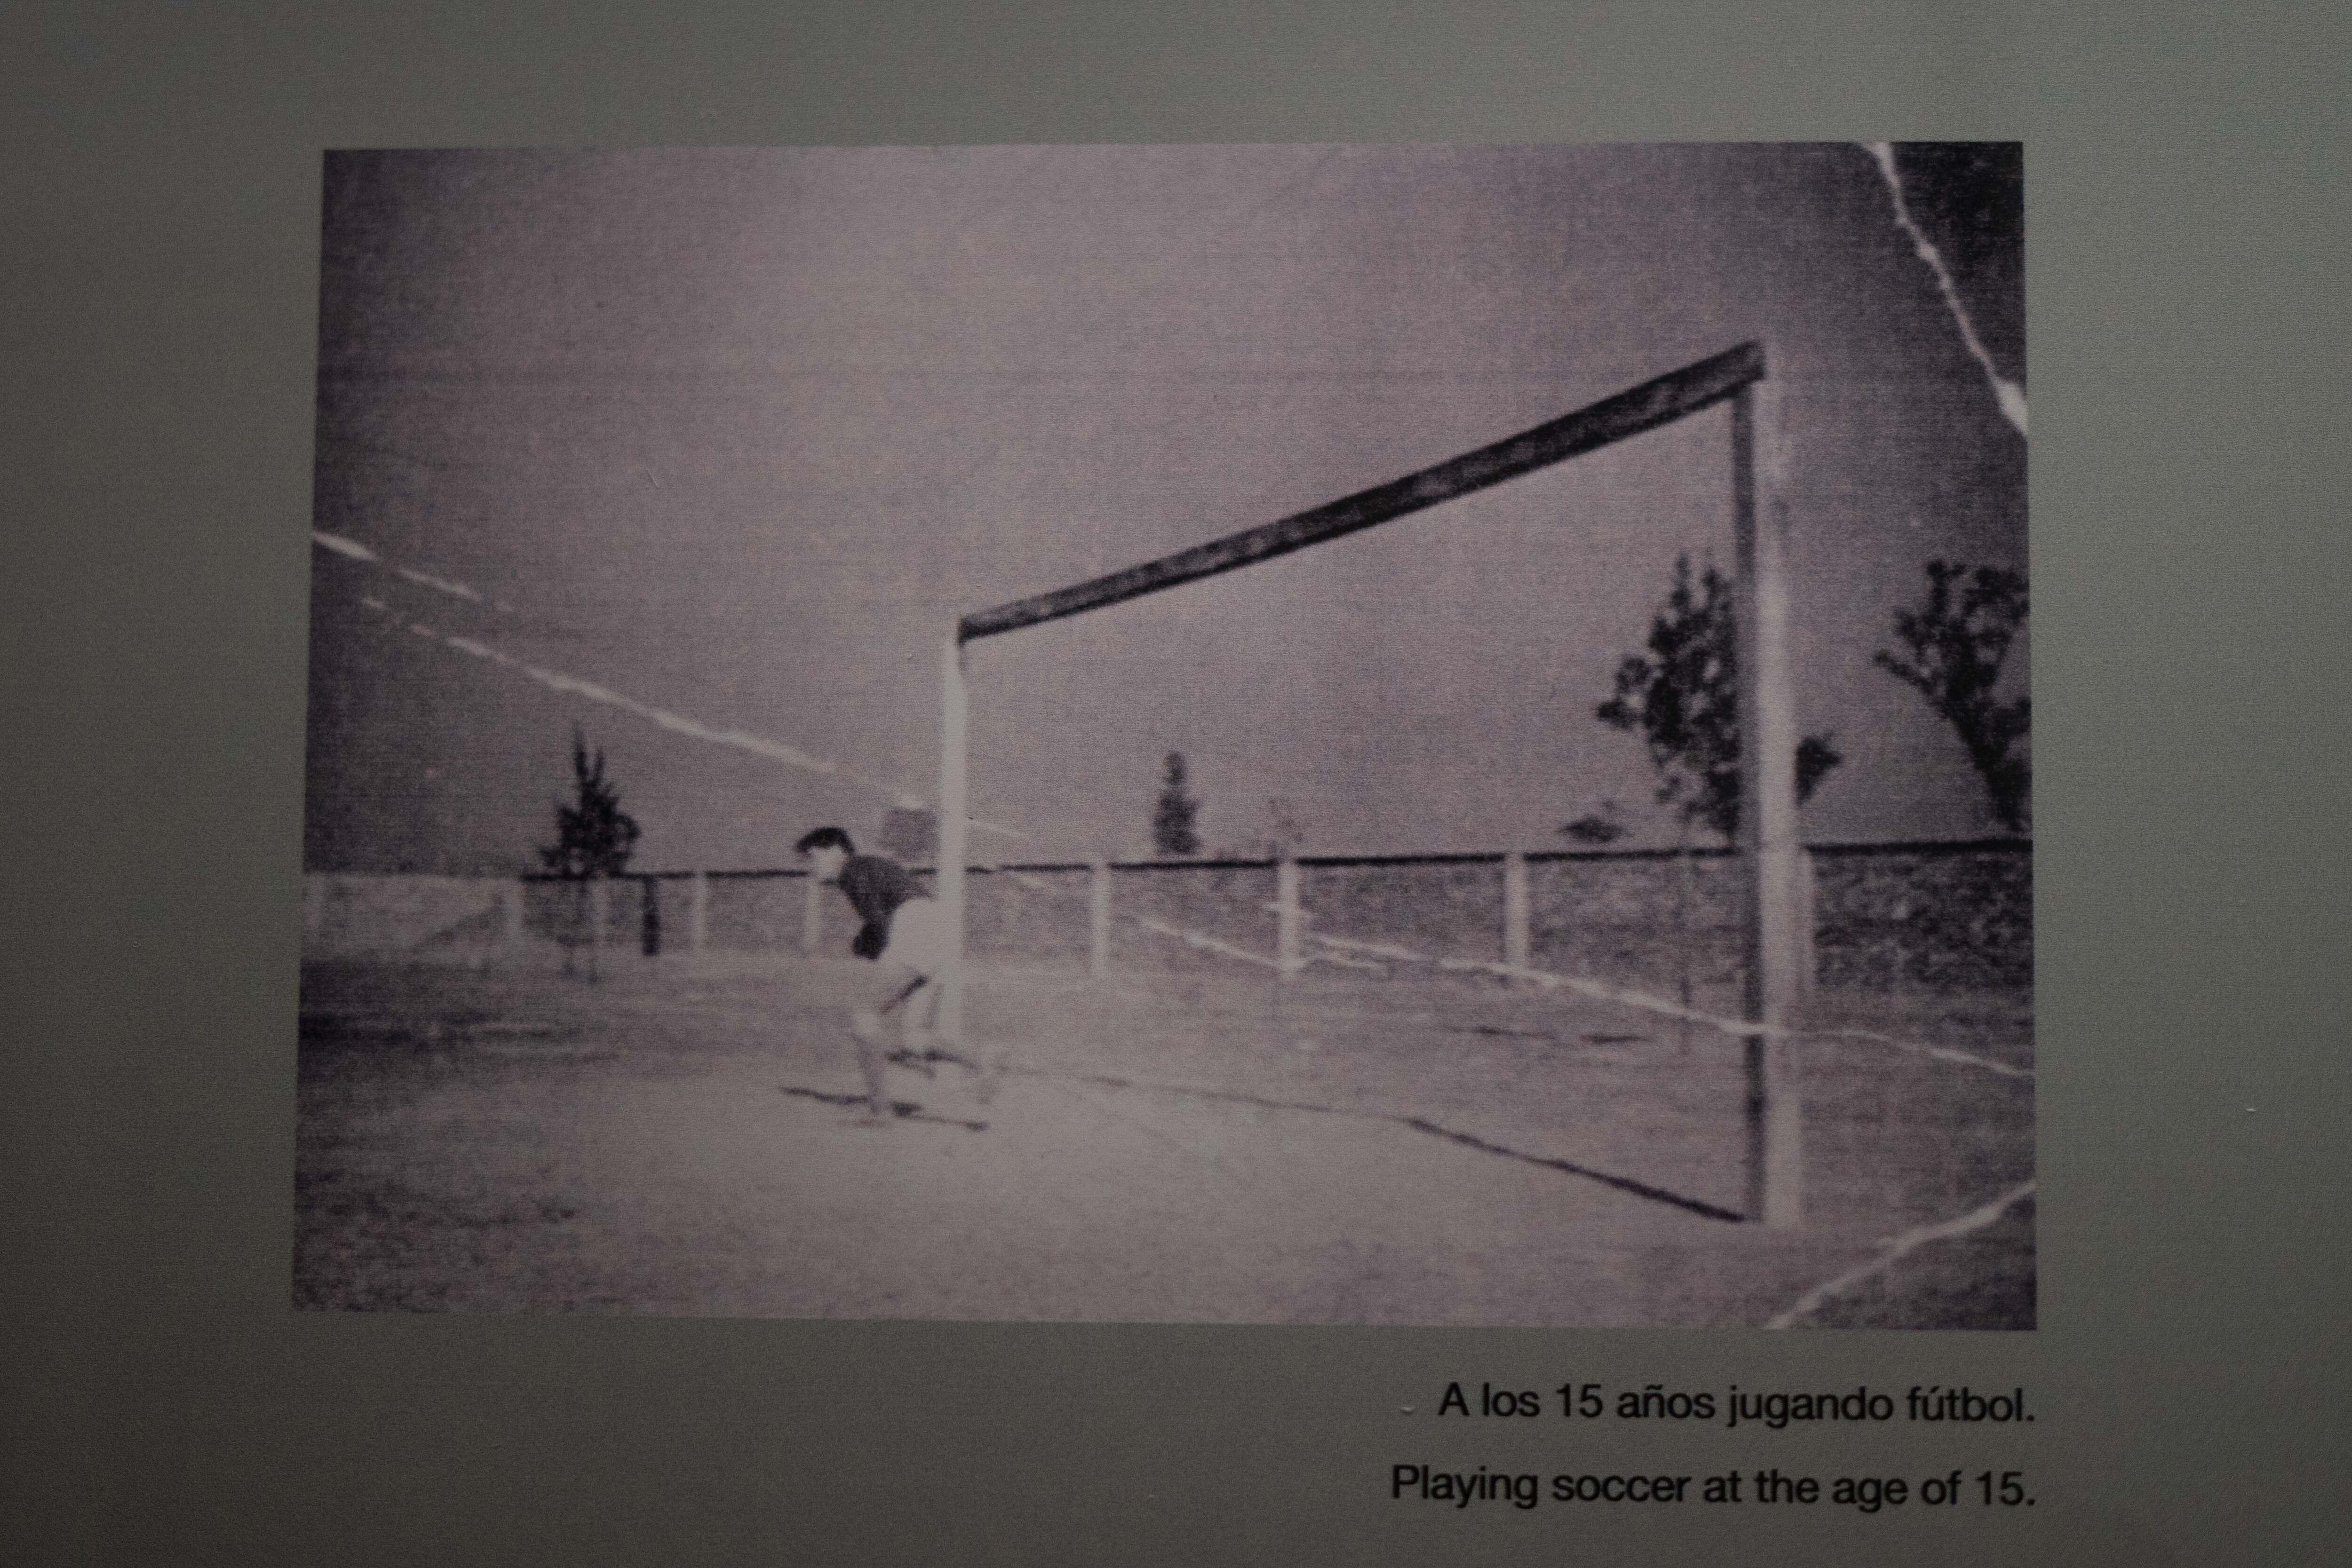 José Alfredo en una fotografía de cuando jugaba fútbol como portero, vista en la casa-museo José Alfredo Jiménez.